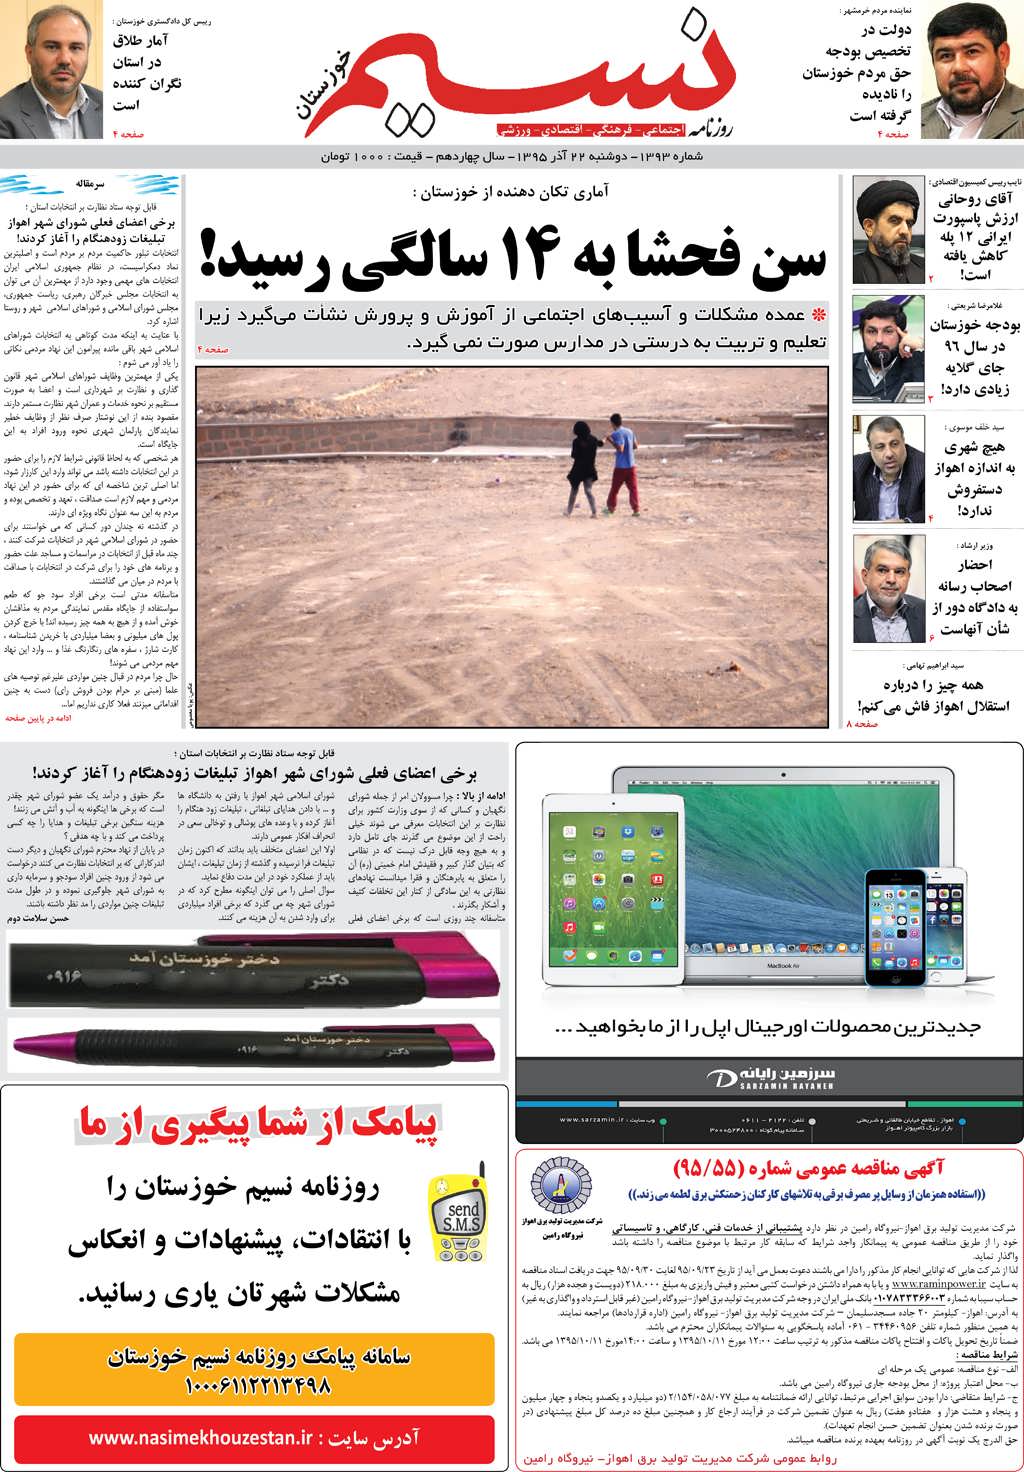 صفحه اصلی روزنامه نسیم شماره 1393